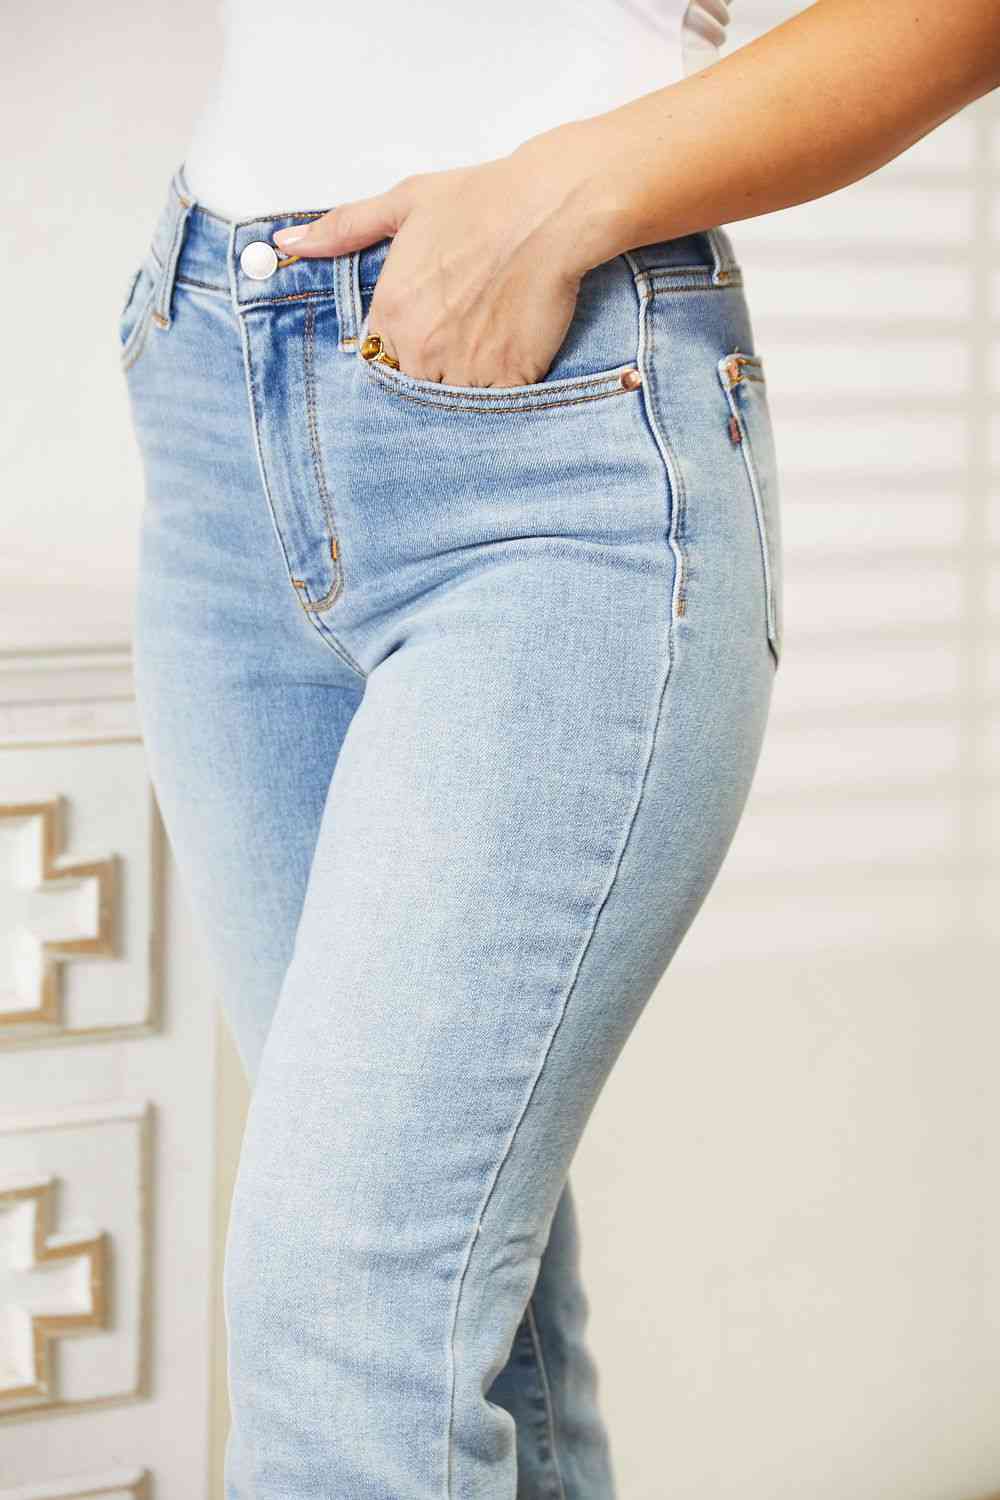 Judy Blue Full Size High Waist Jeans